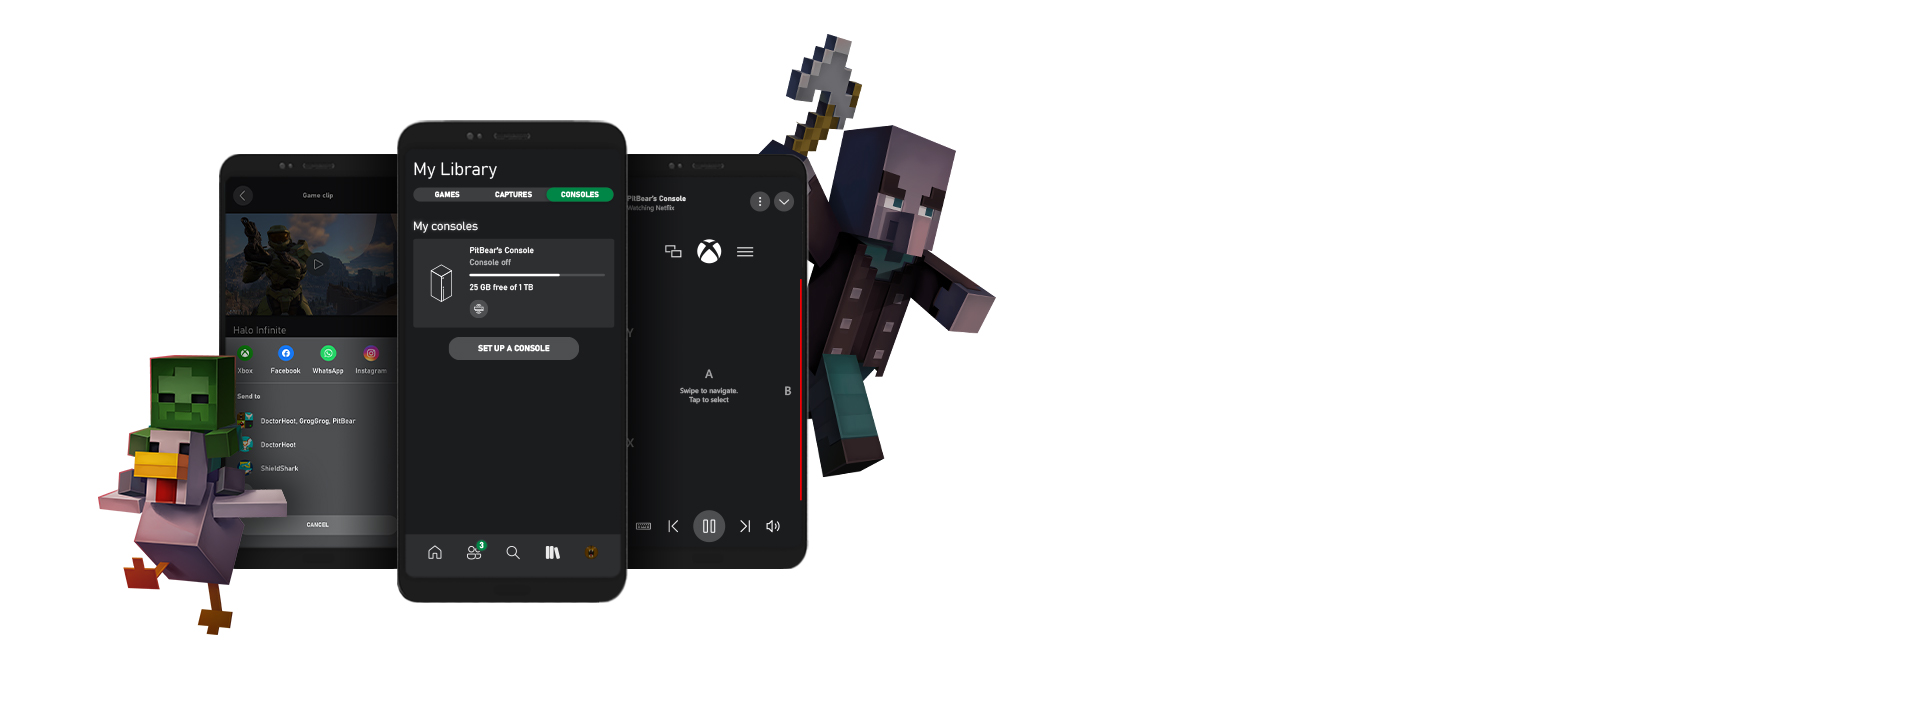 Minecraft-karakterer står rundt flere skjermbilder av Xbox-appen for mobil brukergrensesnitt.